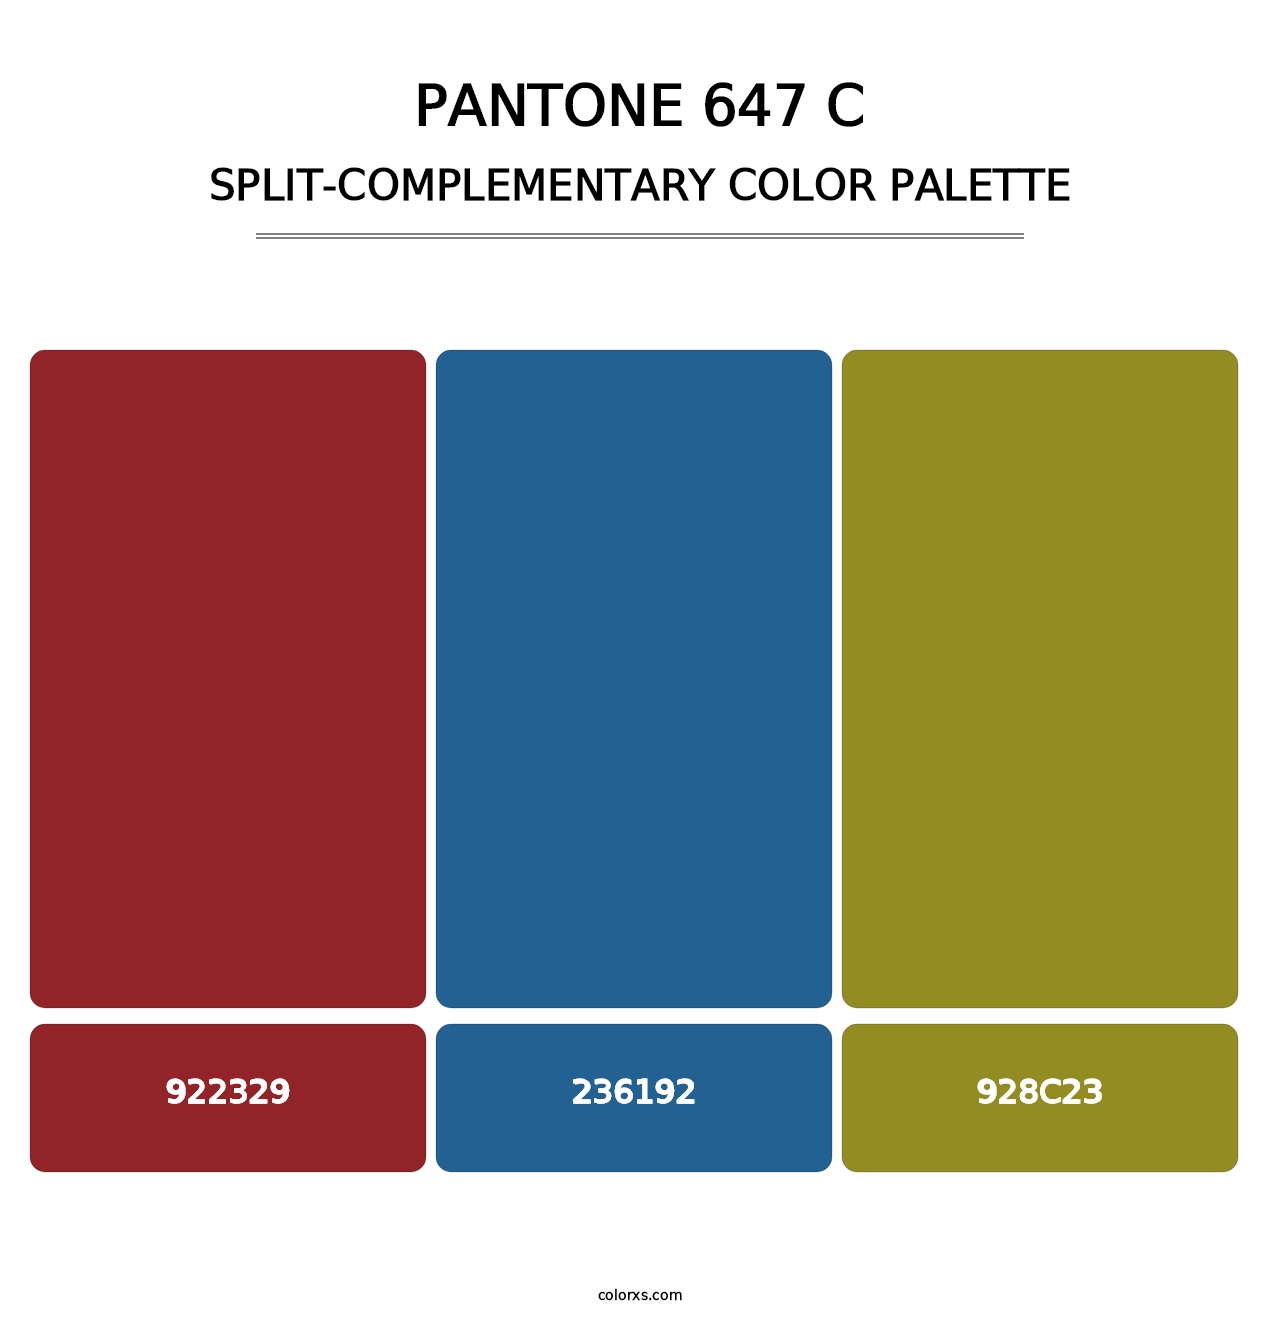 PANTONE 647 C - Split-Complementary Color Palette